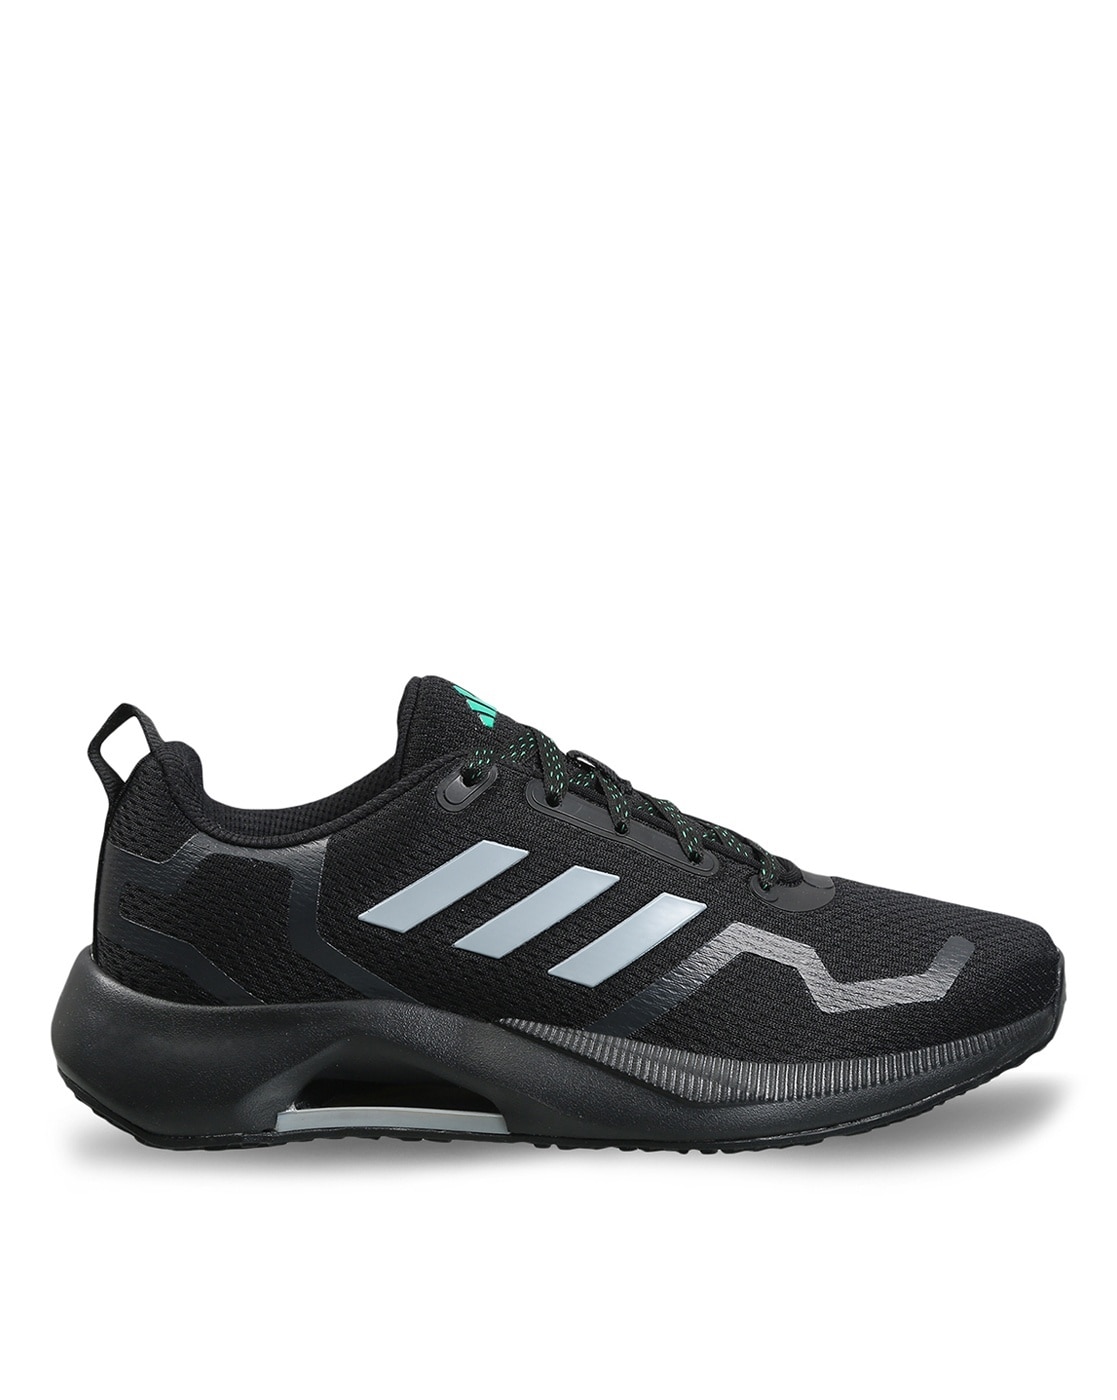 Adidas Lite Racer 3.0 Women's Athletic Running Sneaker Black Training Shoe  #699 | eBay